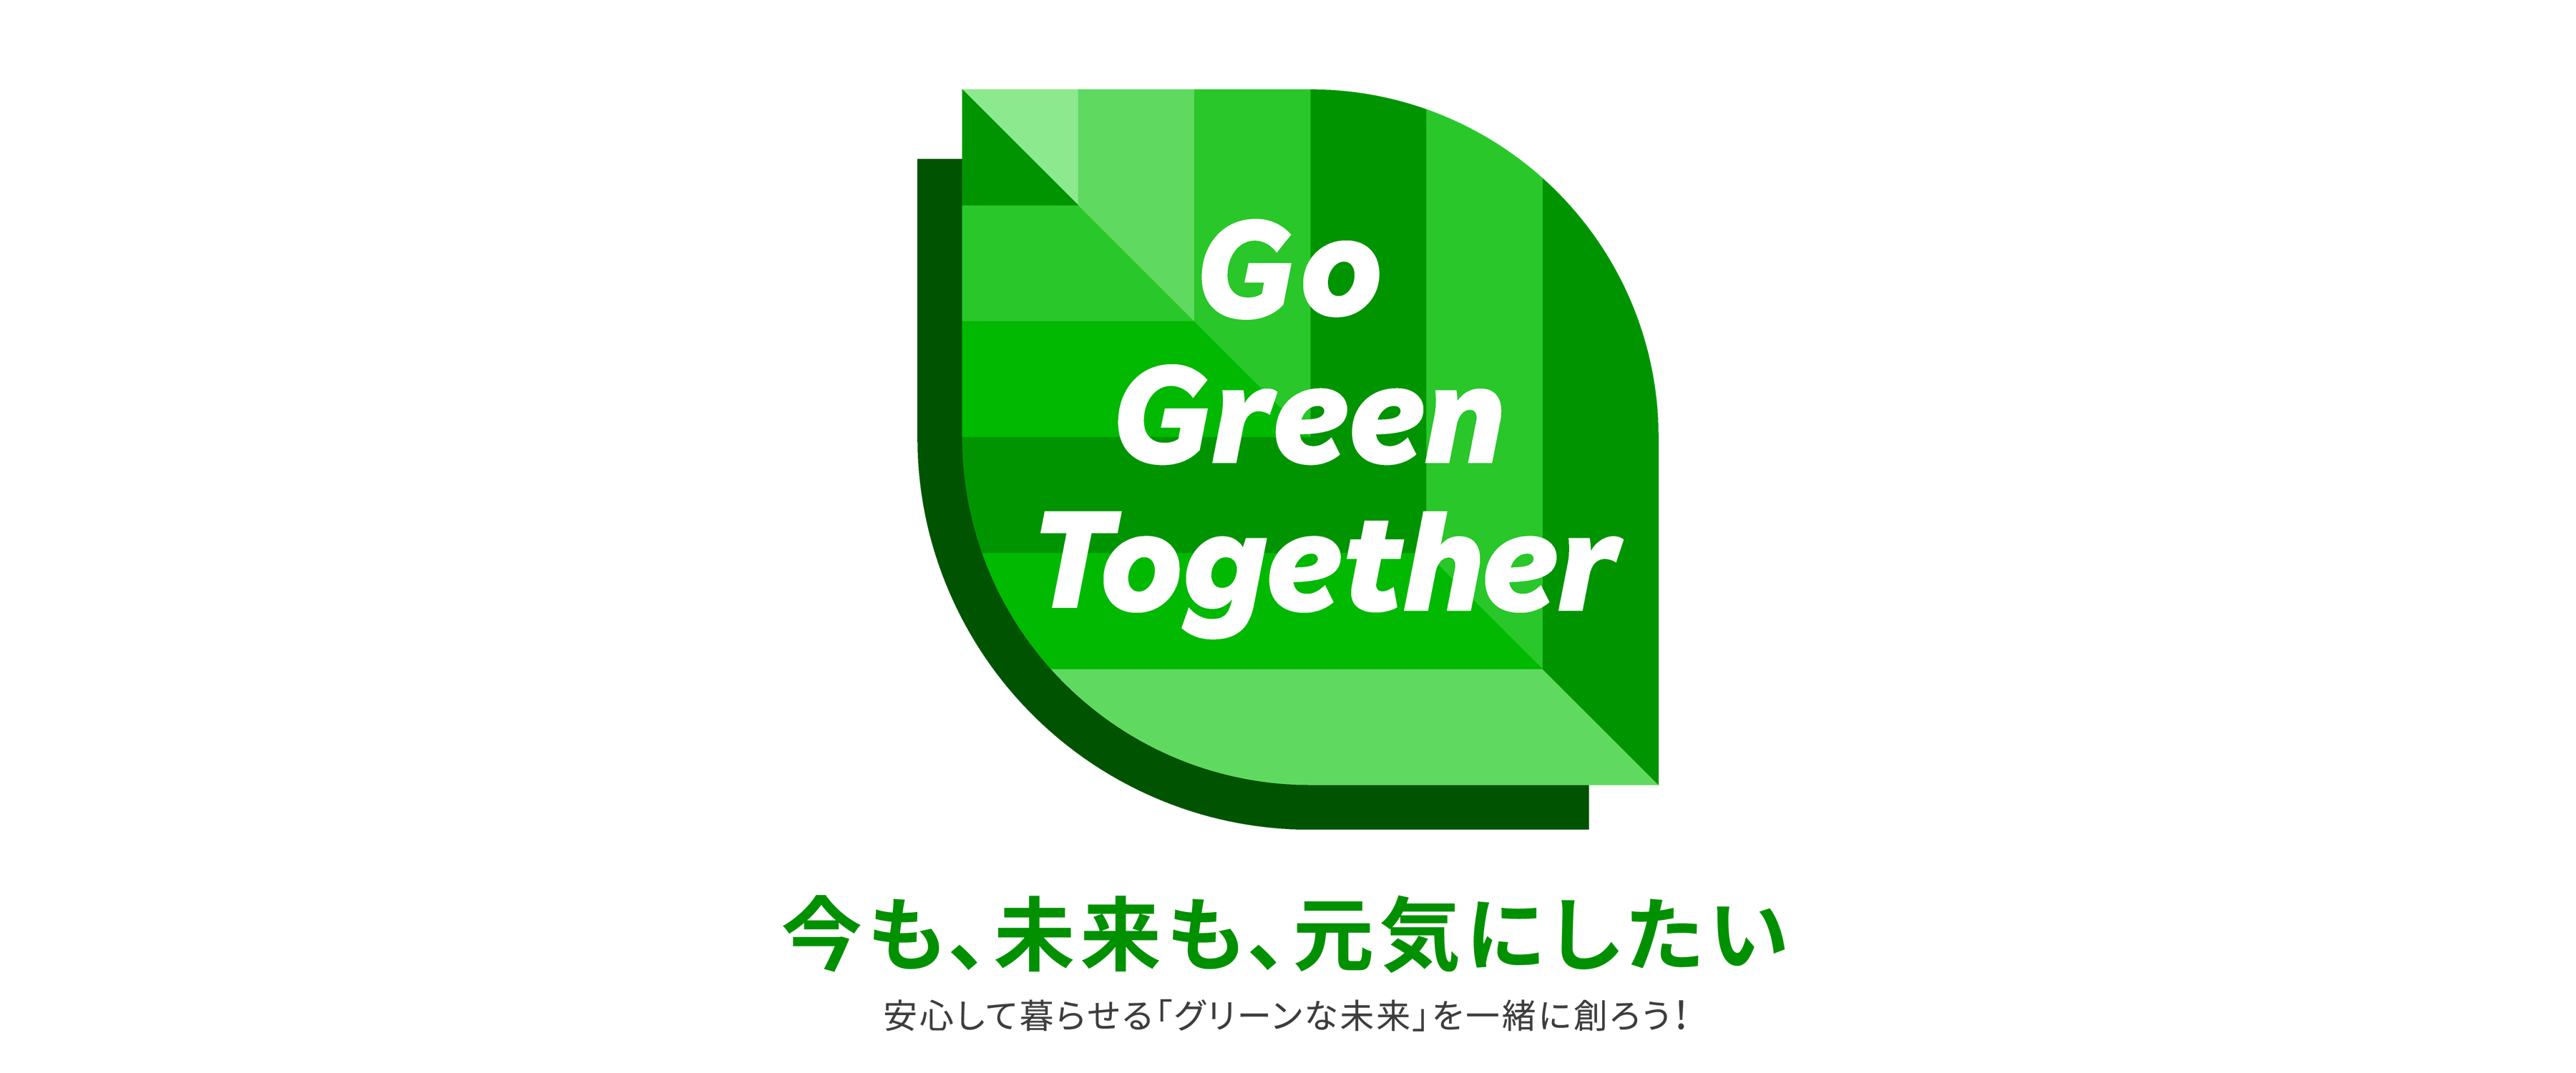 Go Green Together 今も、未来も、元気にしたい 安心して暮らせる「グリーンな未来」を一緒に創ろう！